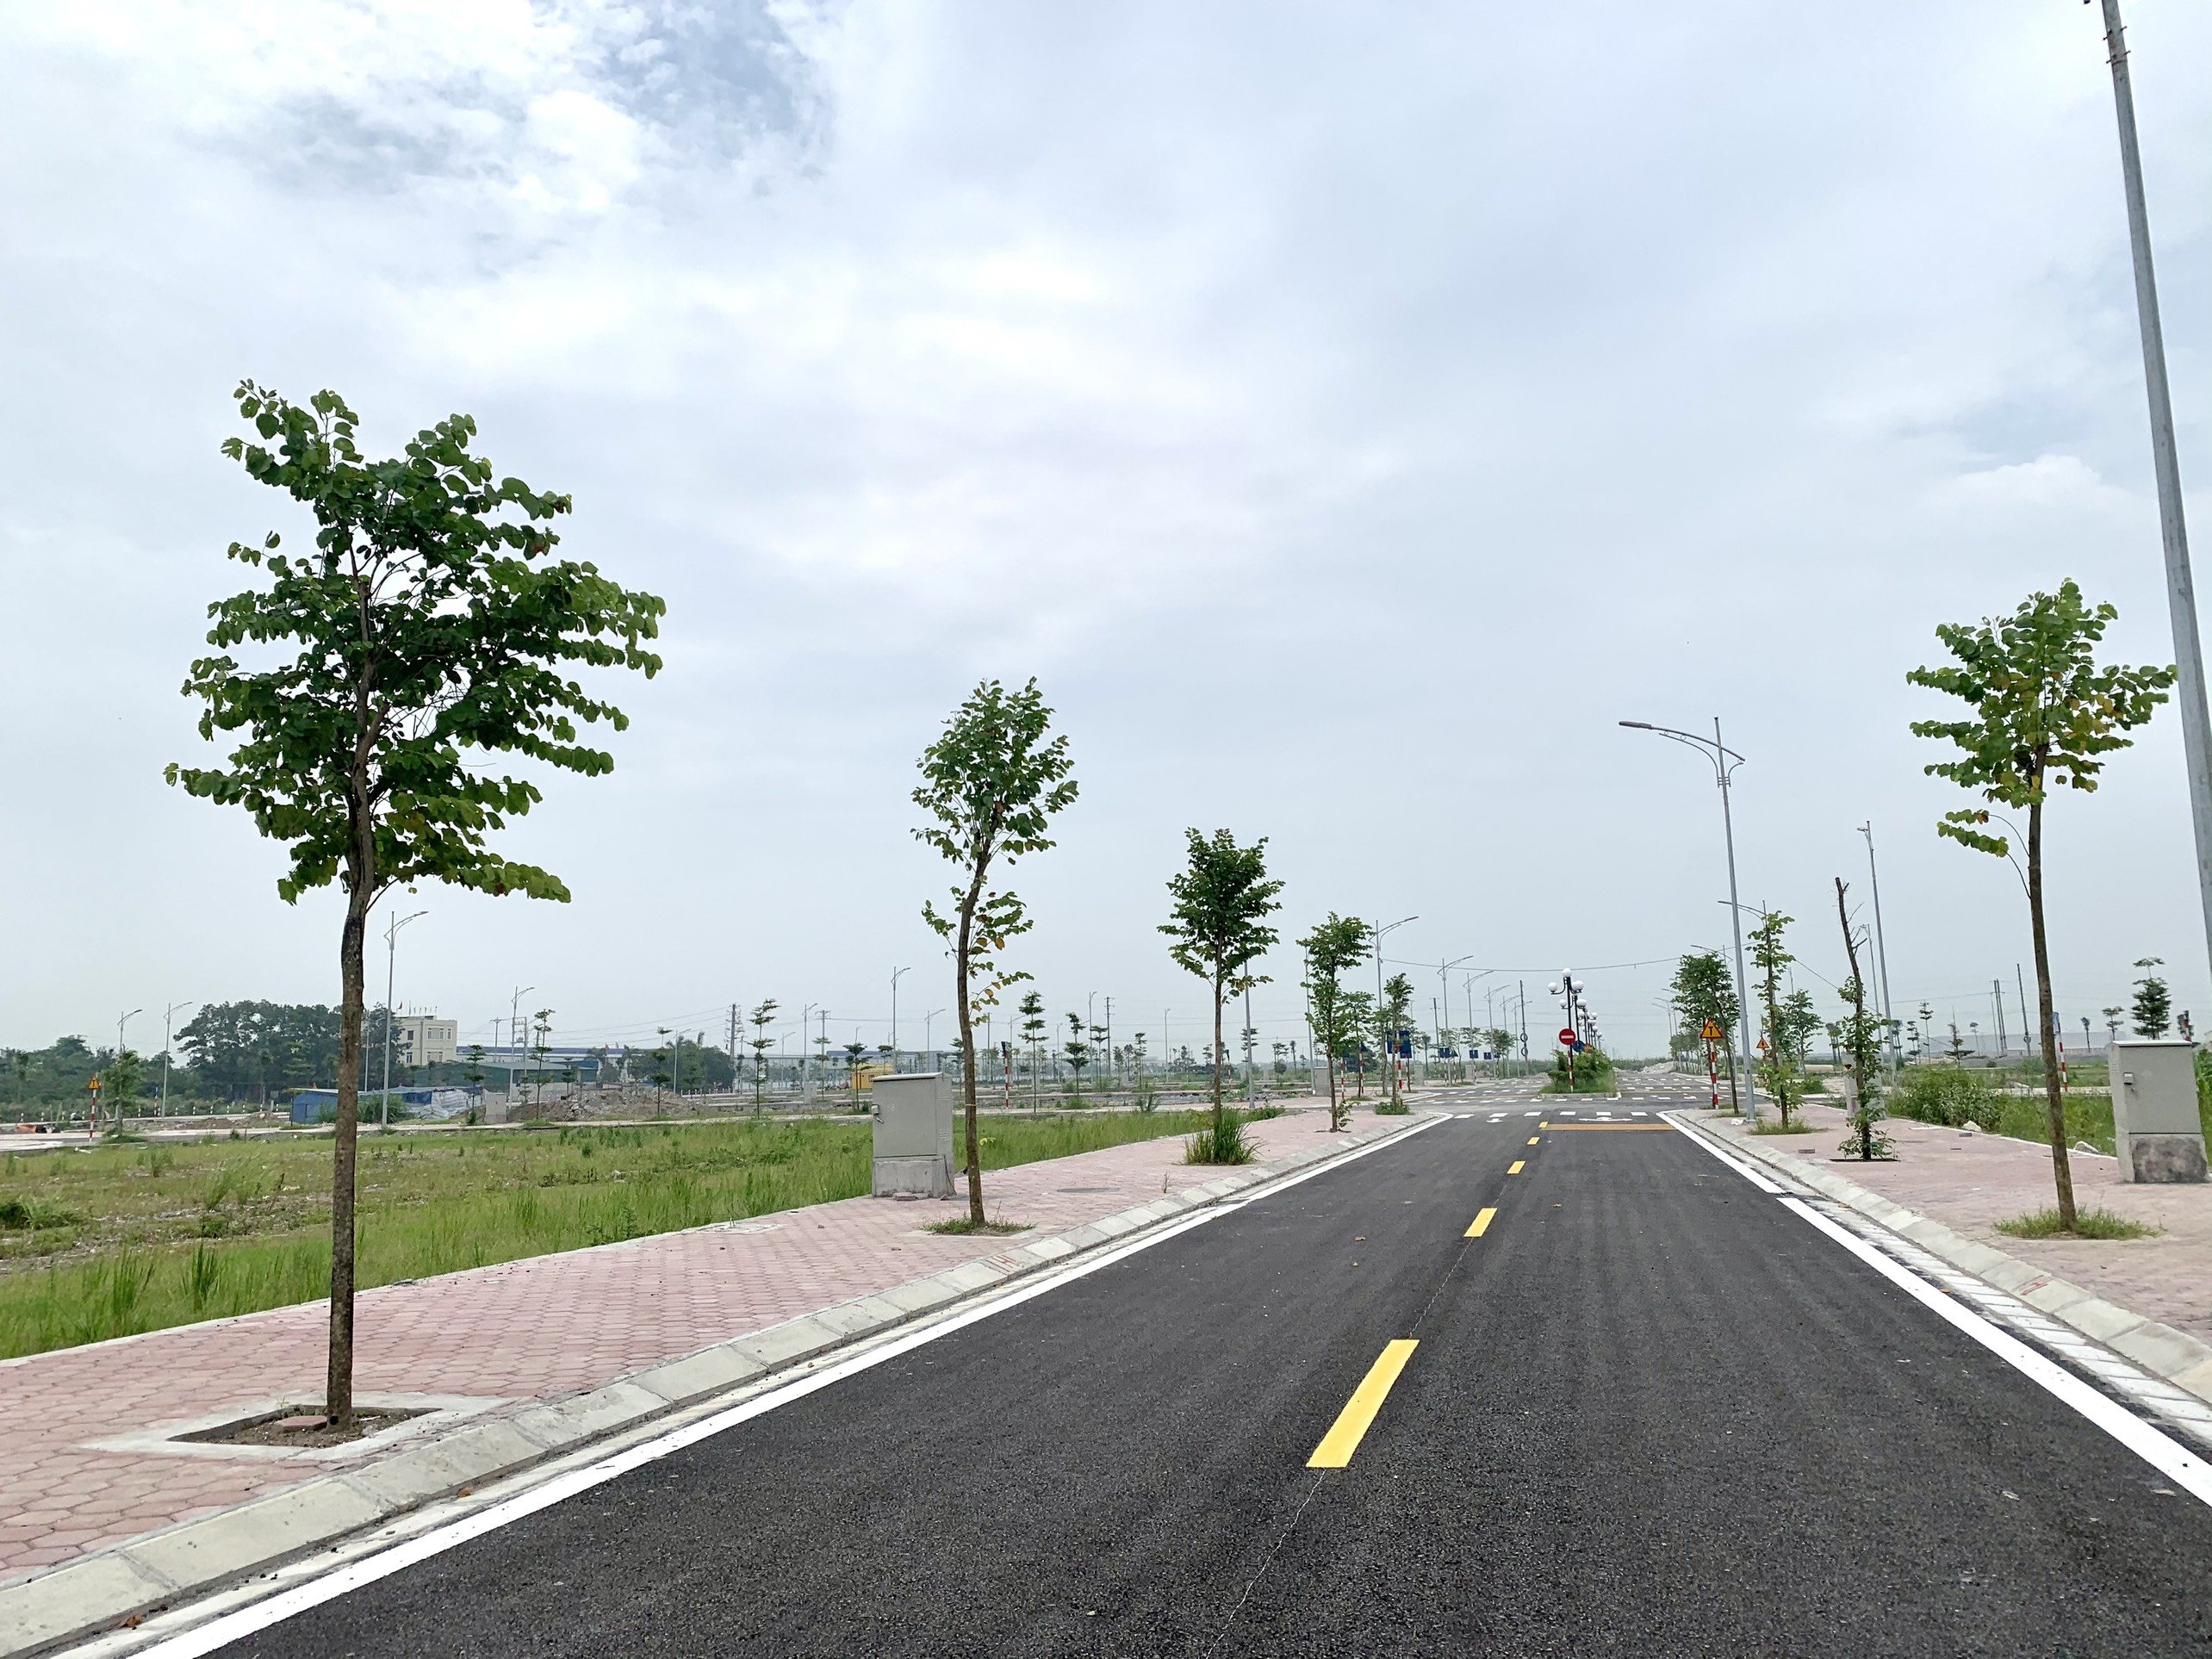 Ra mắt dự án 1/500 hot nhất miền Bắc hiện tại, nằm giữa 2 KCN rộng 1000 ha. Thuận Lợi để kinh doanh mua bán 1